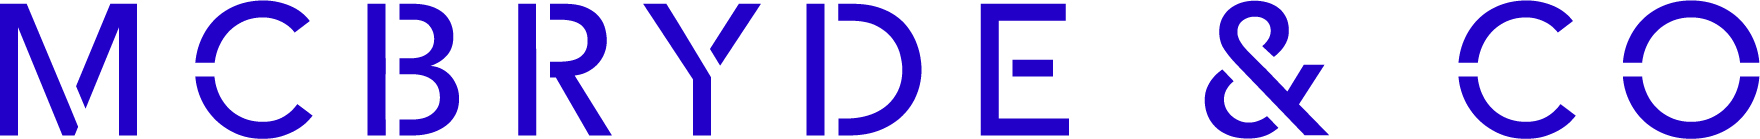 logo for McBryde & Co